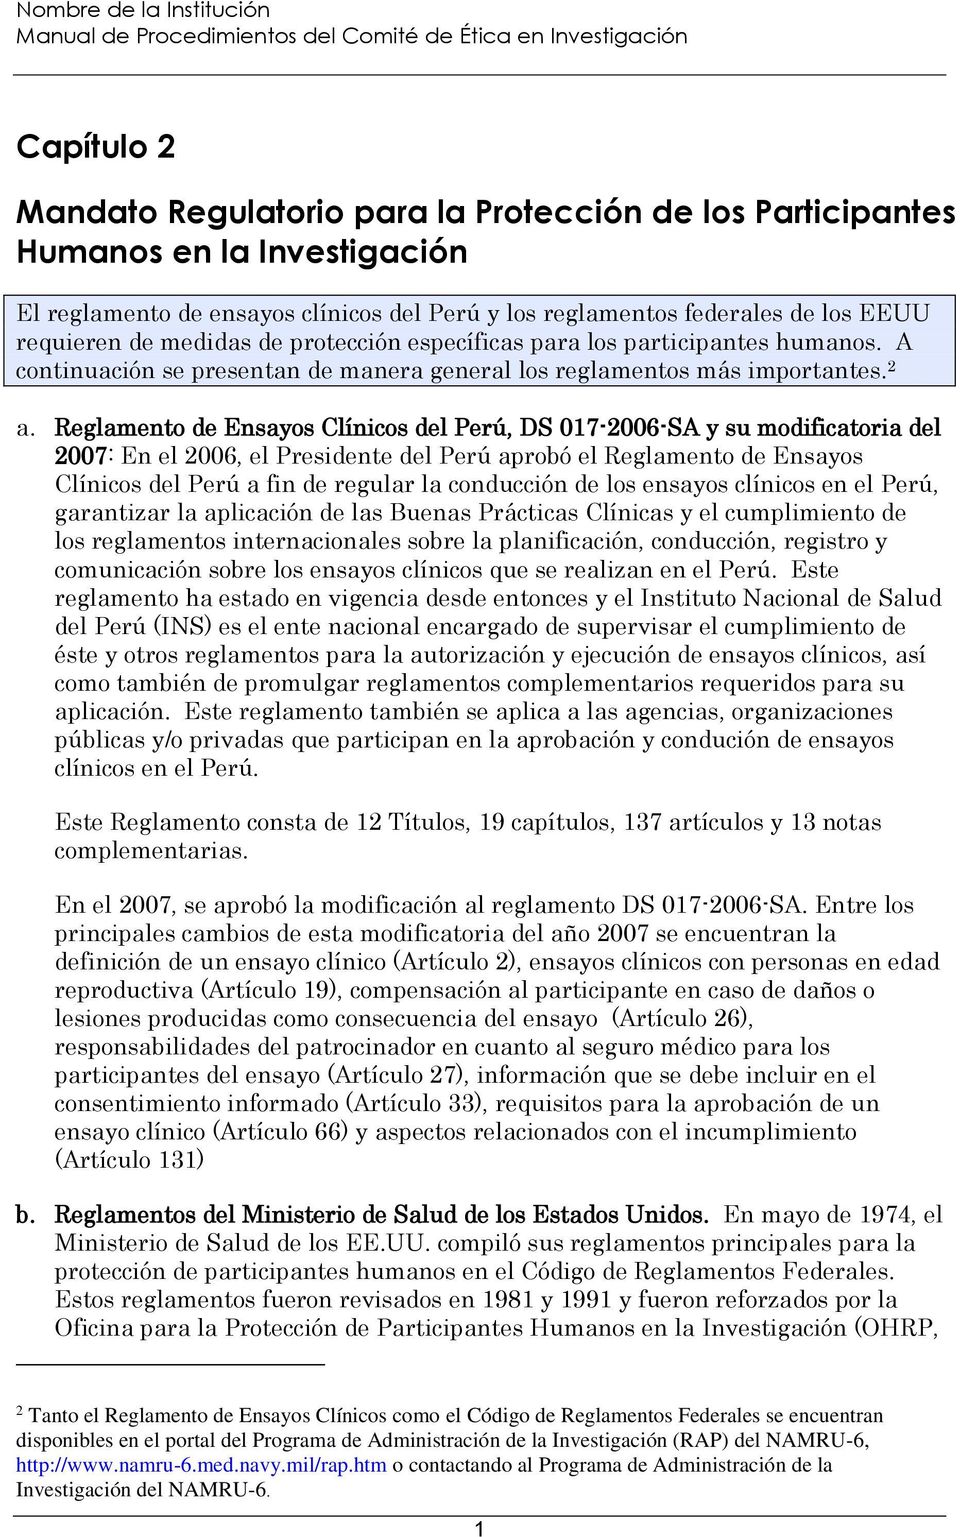 Reglamento de Ensayos Clínicos del Perú, DS 017-2006-SA y su modificatoria del 2007: En el 2006, el Presidente del Perú aprobó el Reglamento de Ensayos Clínicos del Perú a fin de regular la